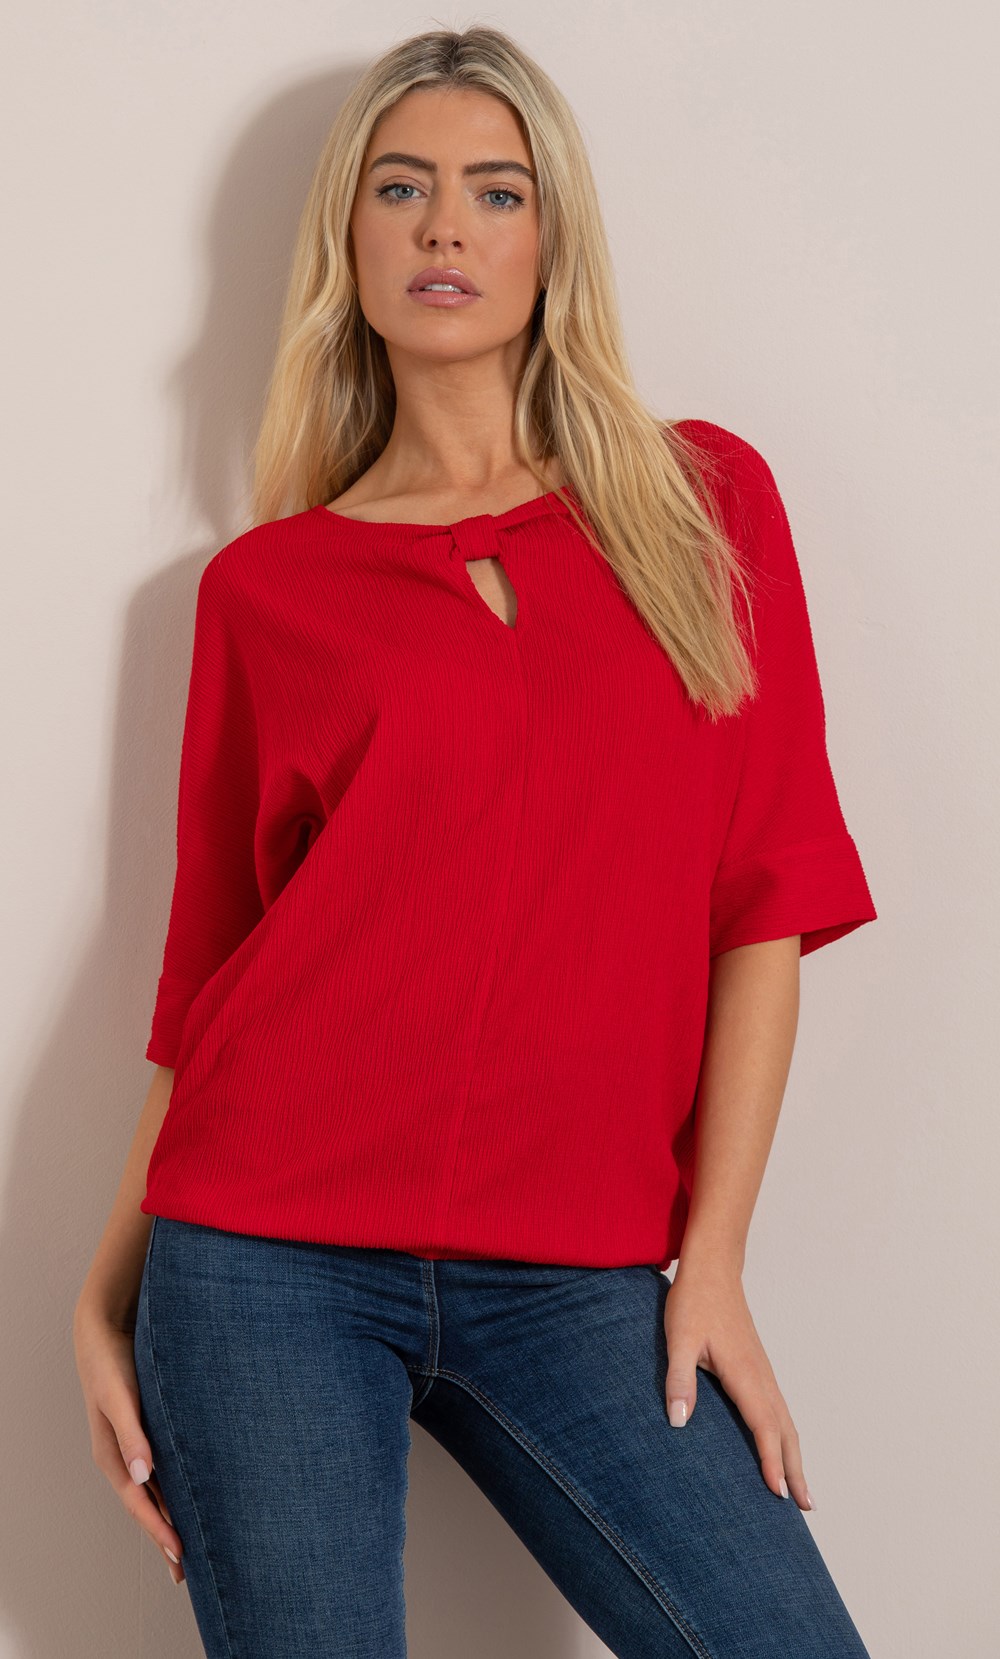 Brands - Klass Textured Short Sleeve Top Red Women’s